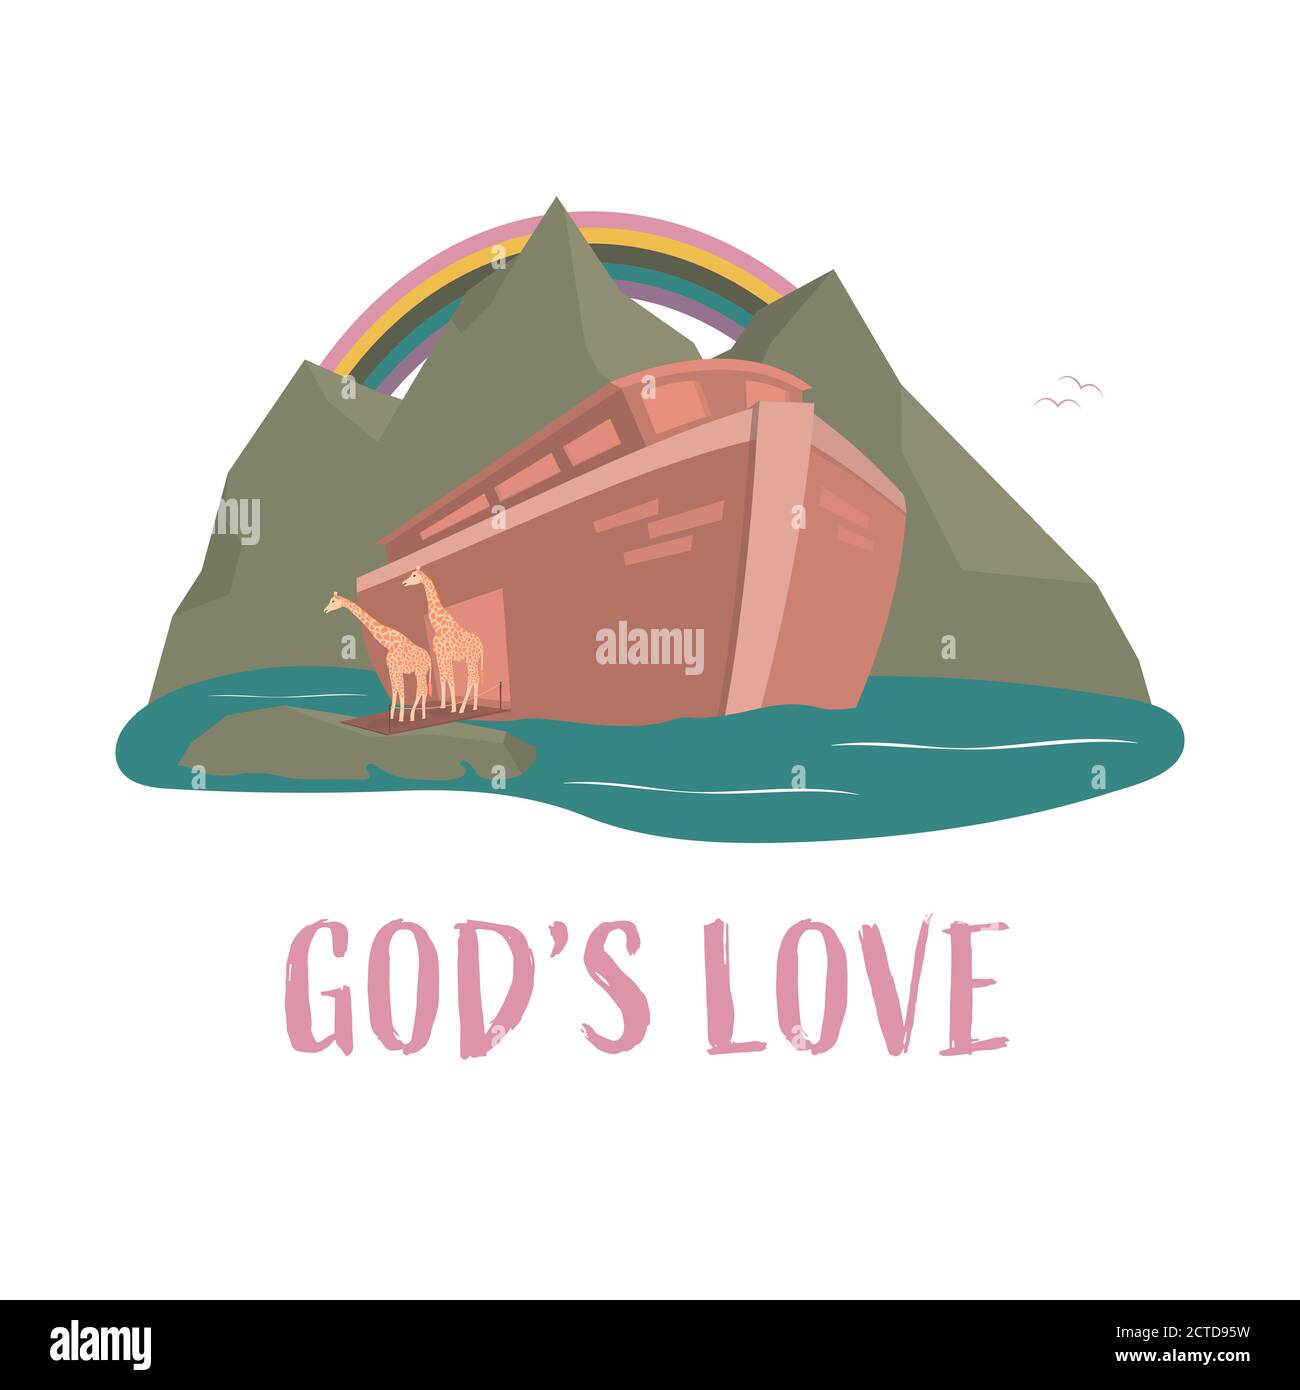 Christian worship and praise. Noah’s ark with rainbow and text: God’s love Stock Vector